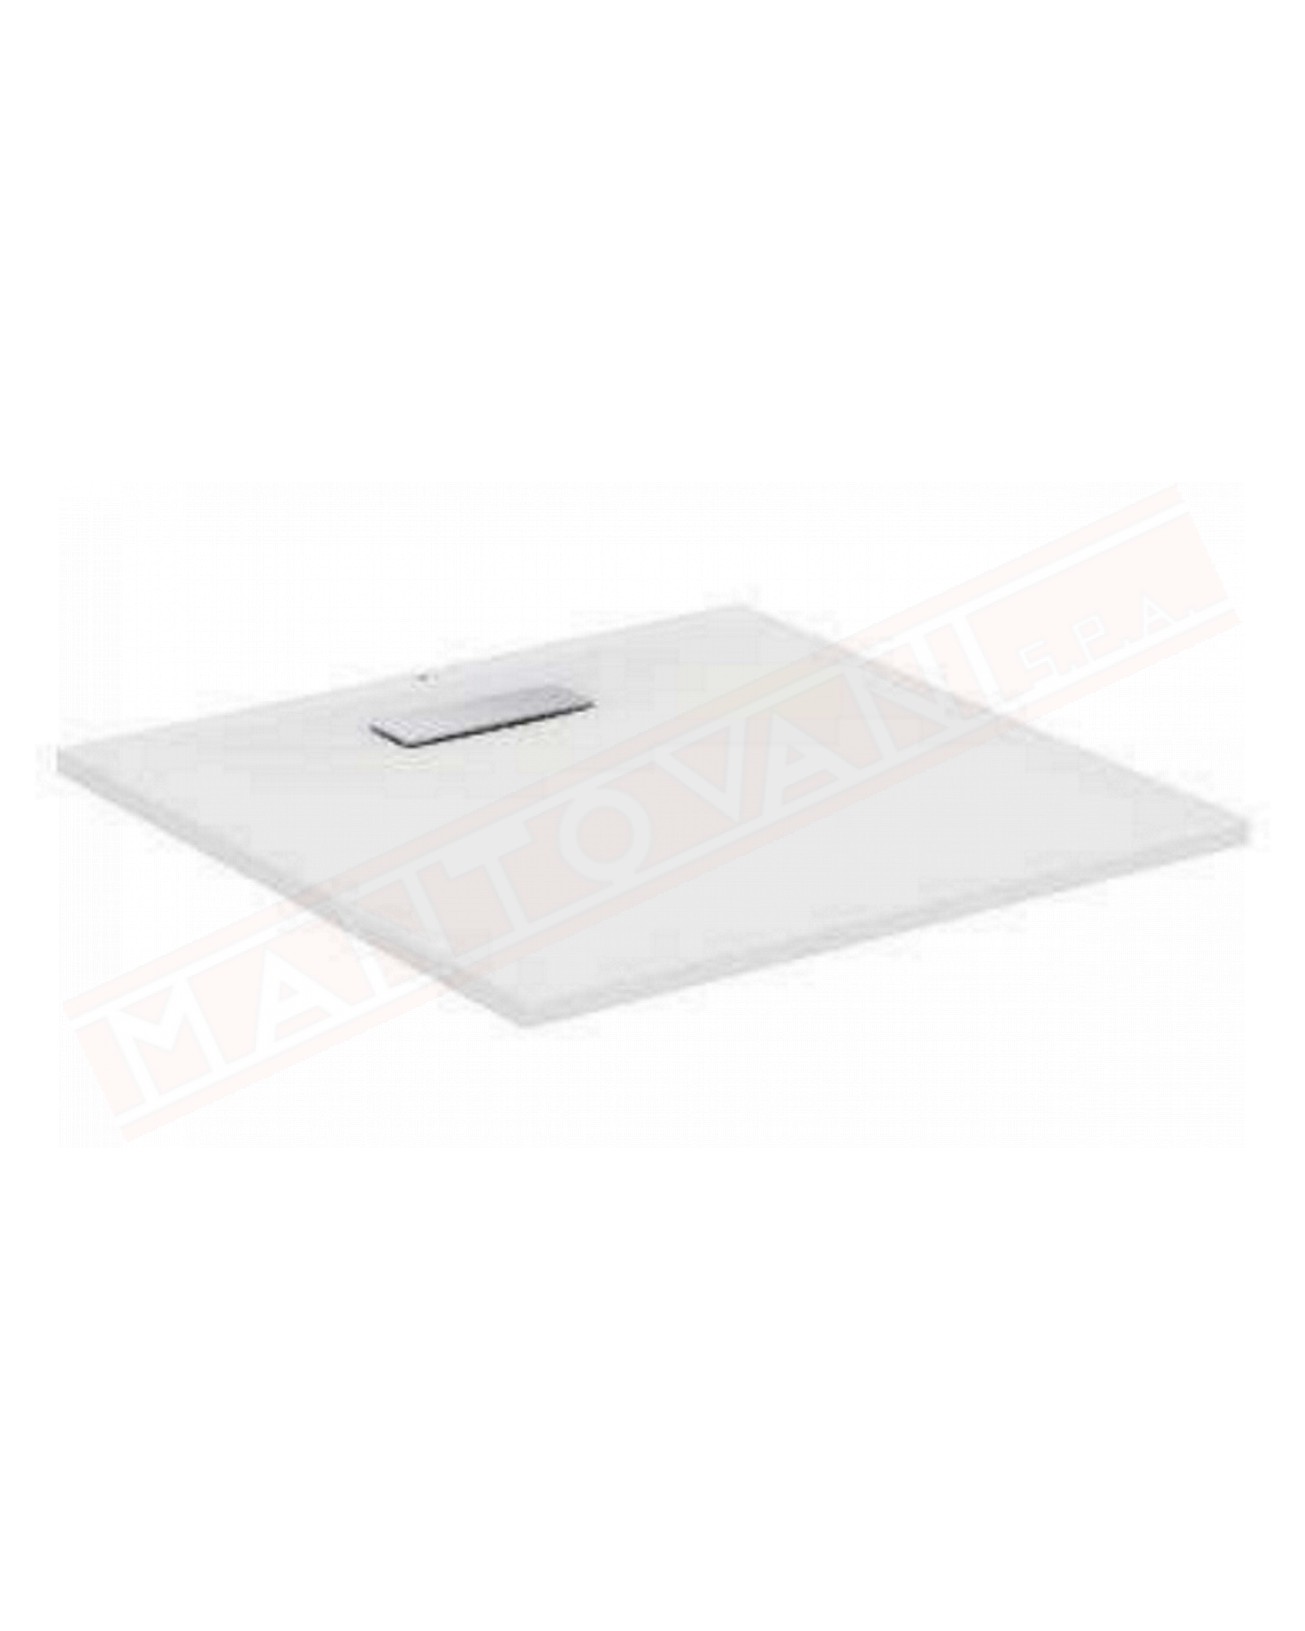 Ideal Standard ultraflat new bianco lucido 100x100x2.5 piatto doccia ultrasottile in acrilico in pasta senza piletta t4493aa